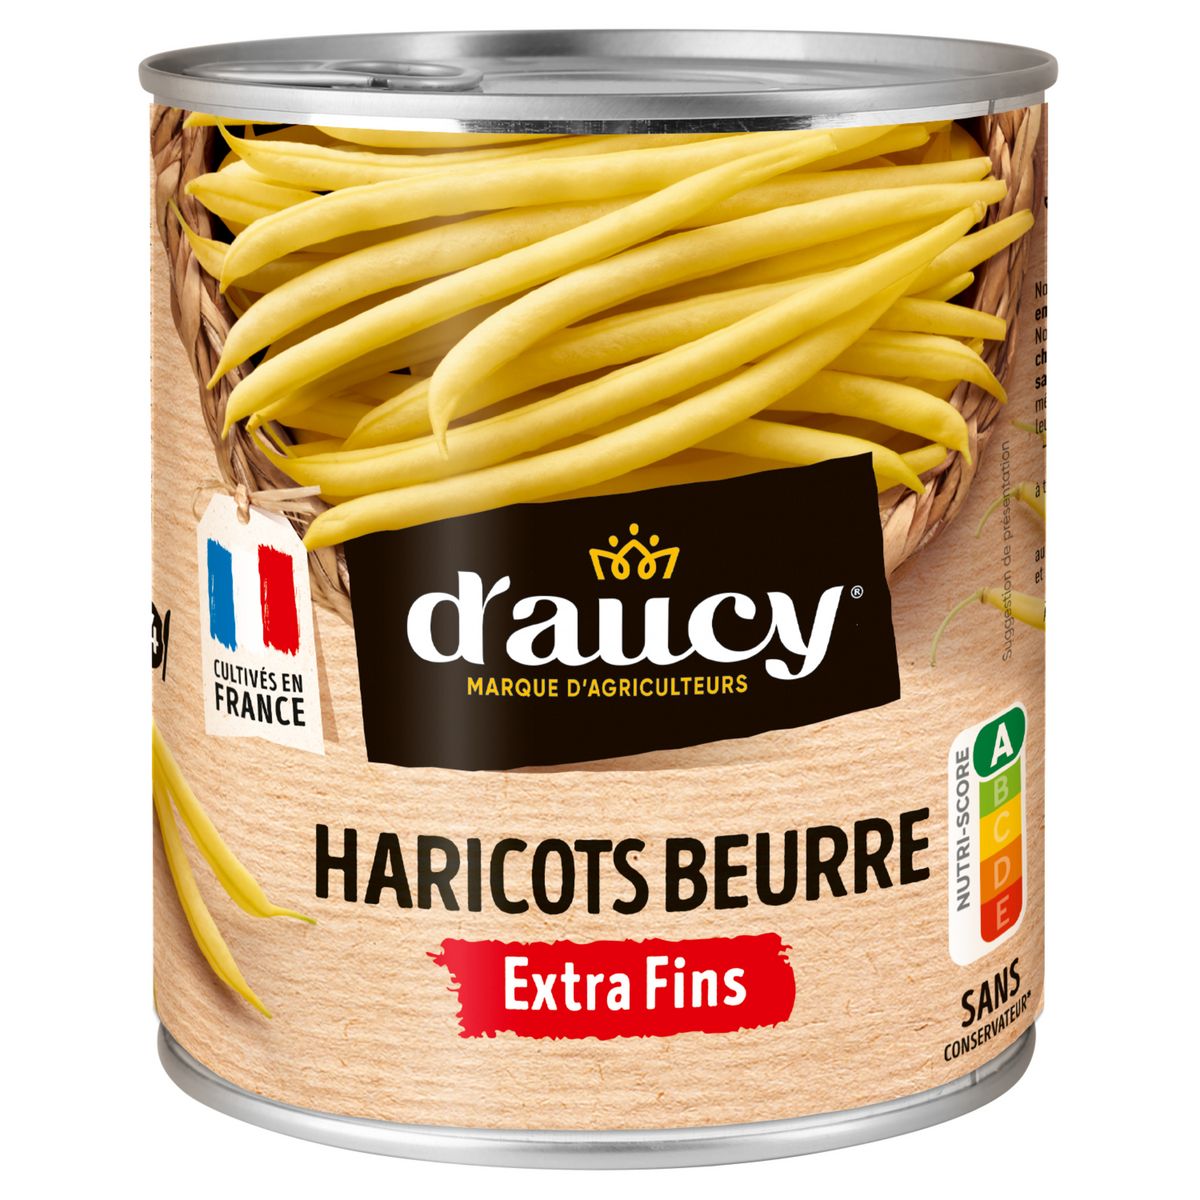 D'AUCY Haricots beurre extra fins 100% cultivés en France 440g